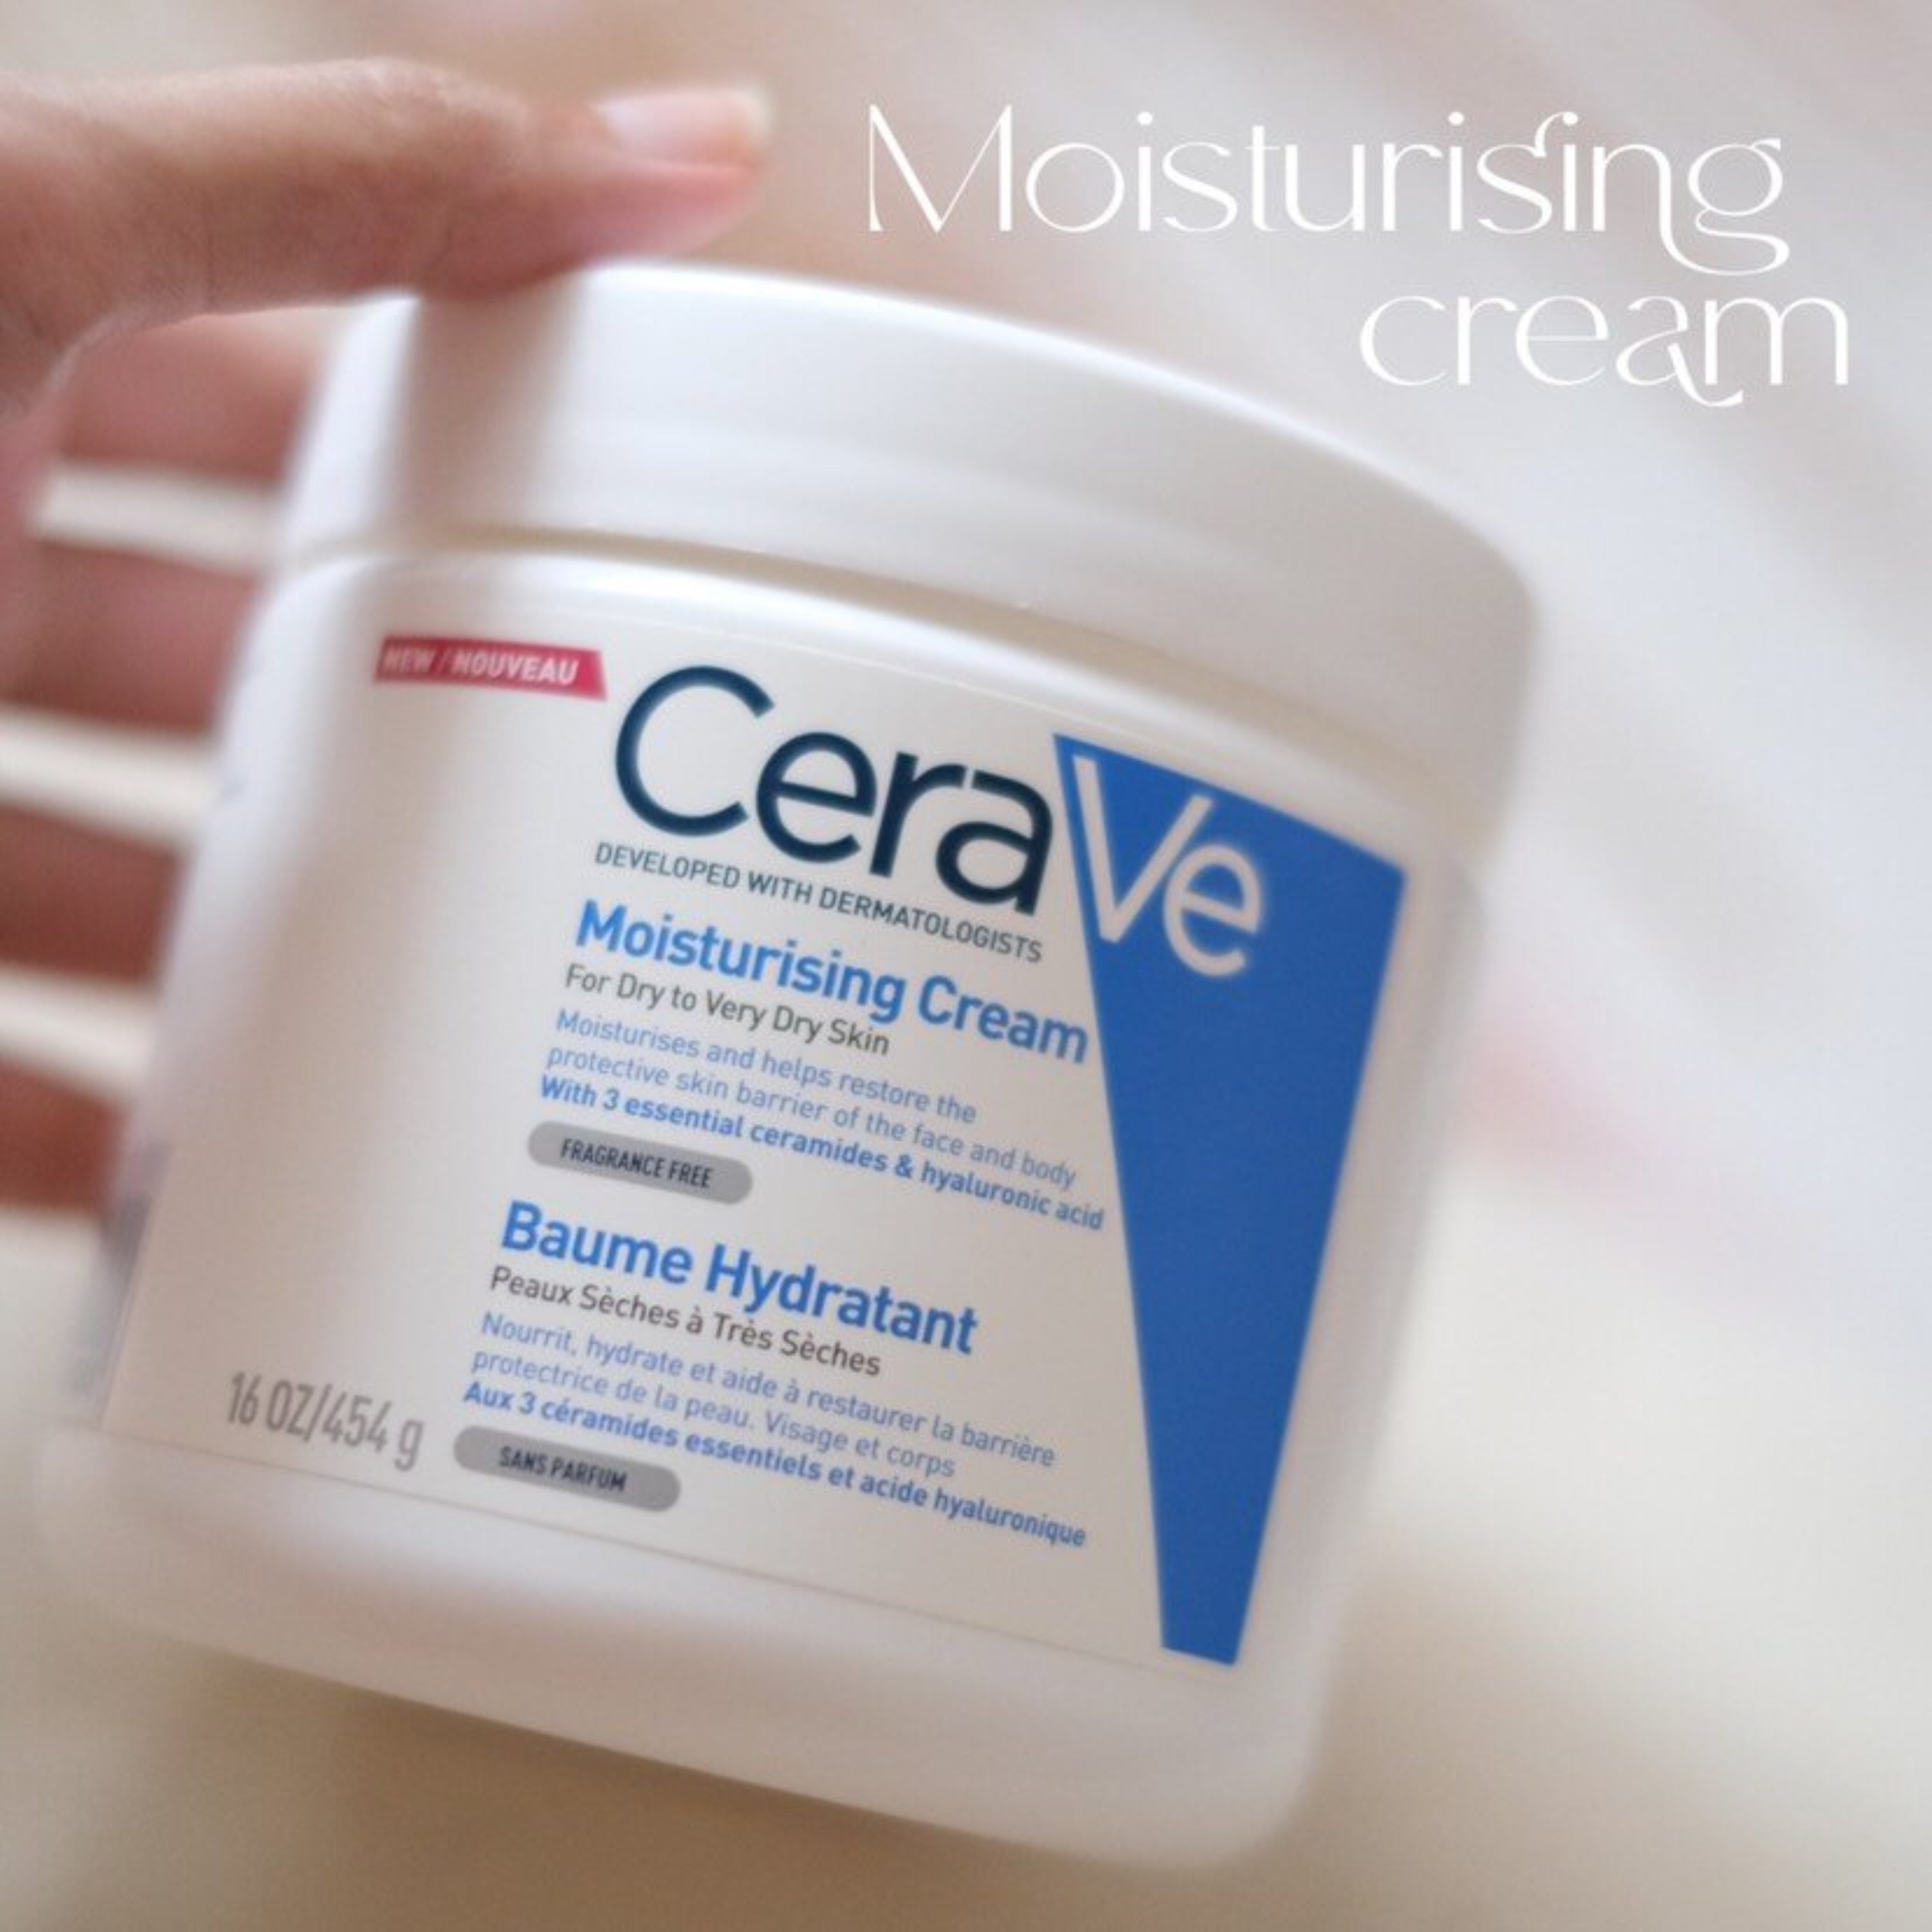 Moisturizing Cream 454g with 3 ESSENTIAL CERAMIDES